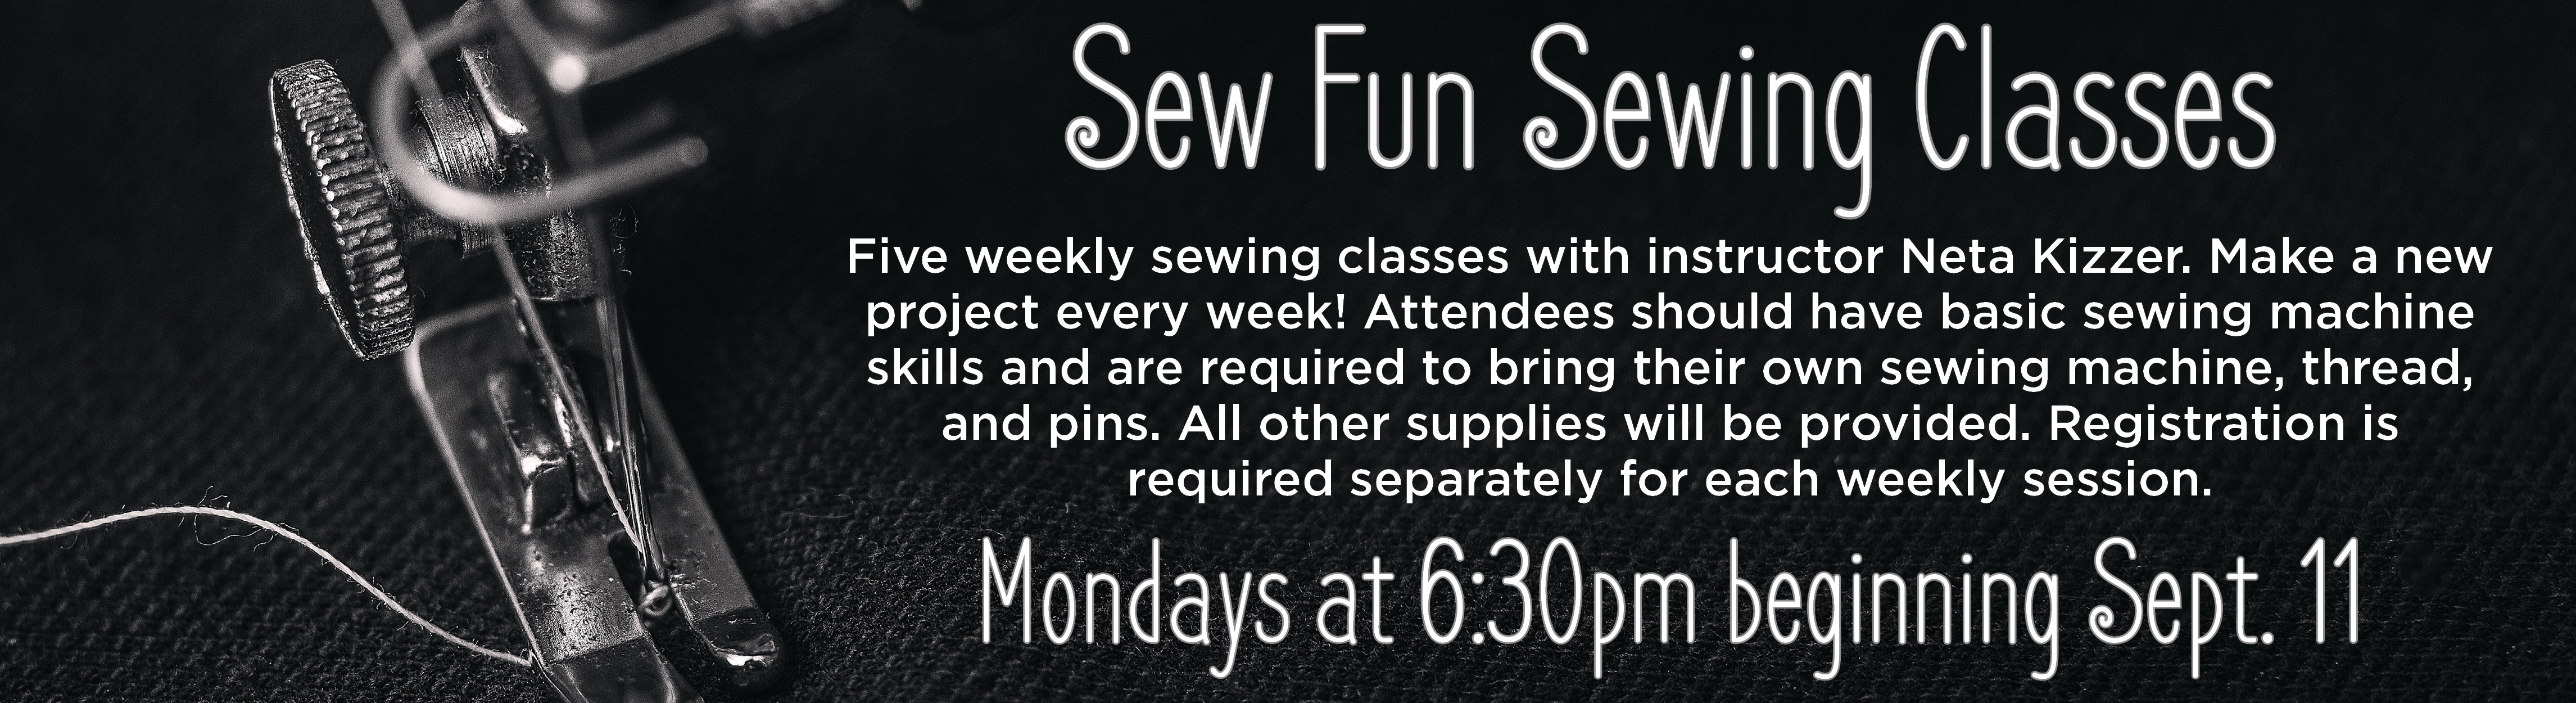 Sew Fun Sewing Classes